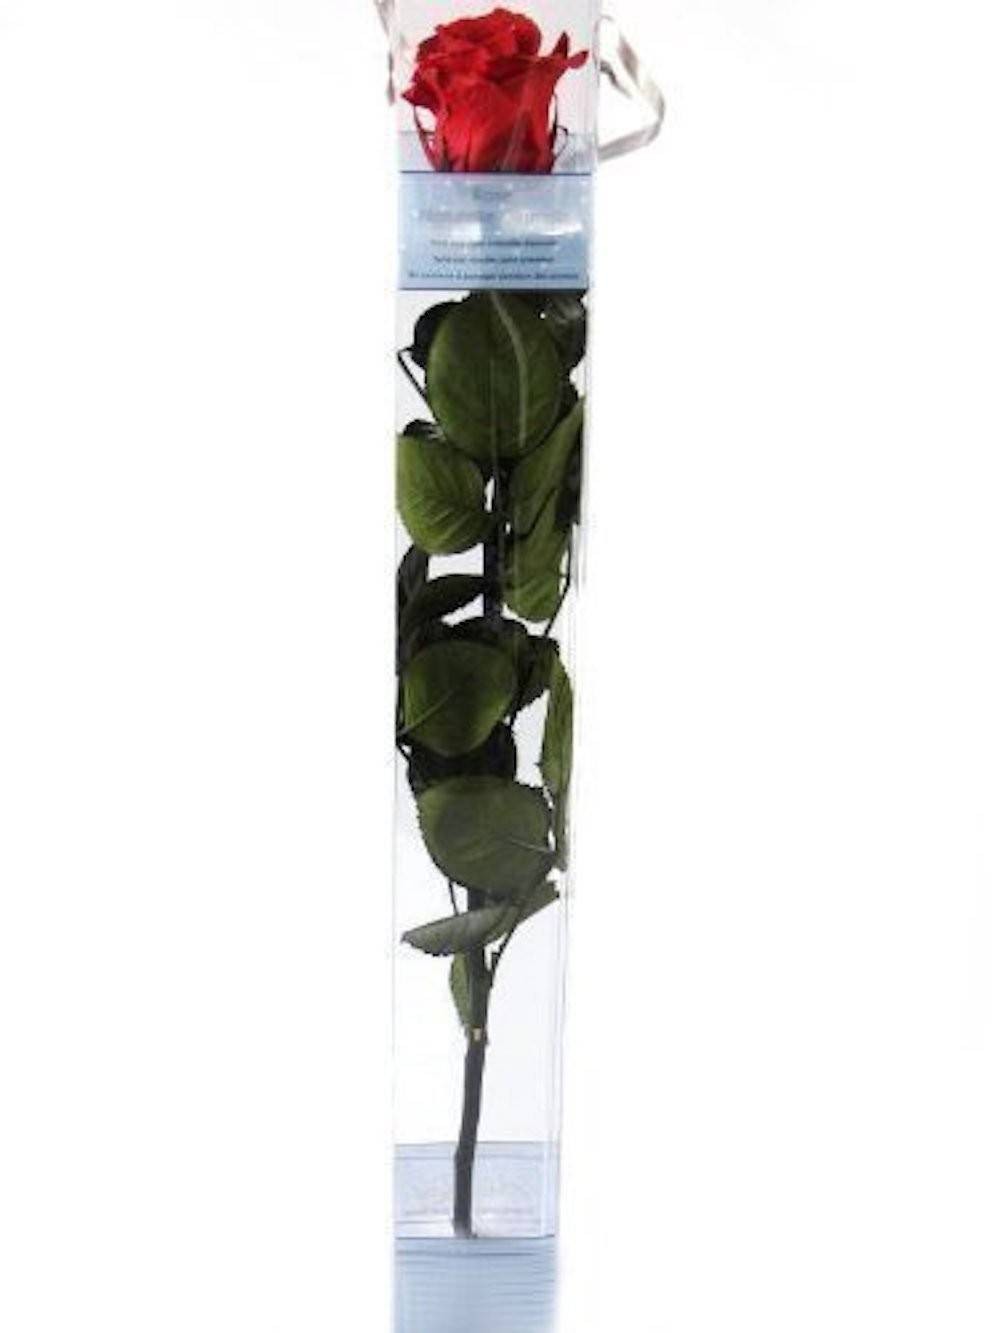 Cumpara online Trandafiri criogenati naturali, cel mai bun pret!